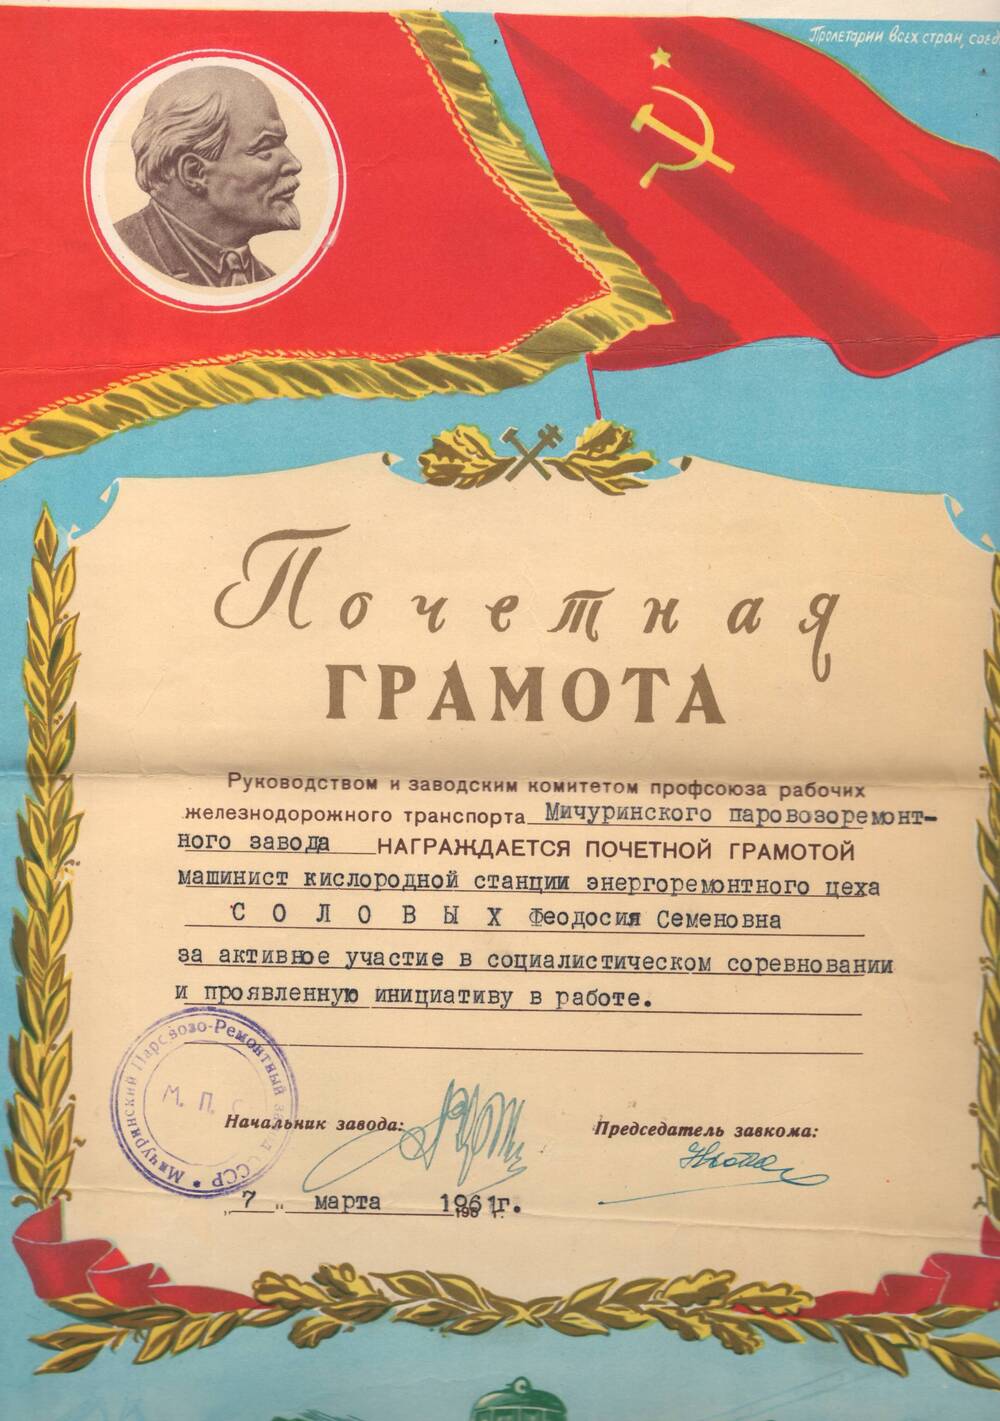 Почетная грамота, врученная Соловых Феодосии Семеновне, за активное участие в соц. соревновании и проявленную инициативу в работе